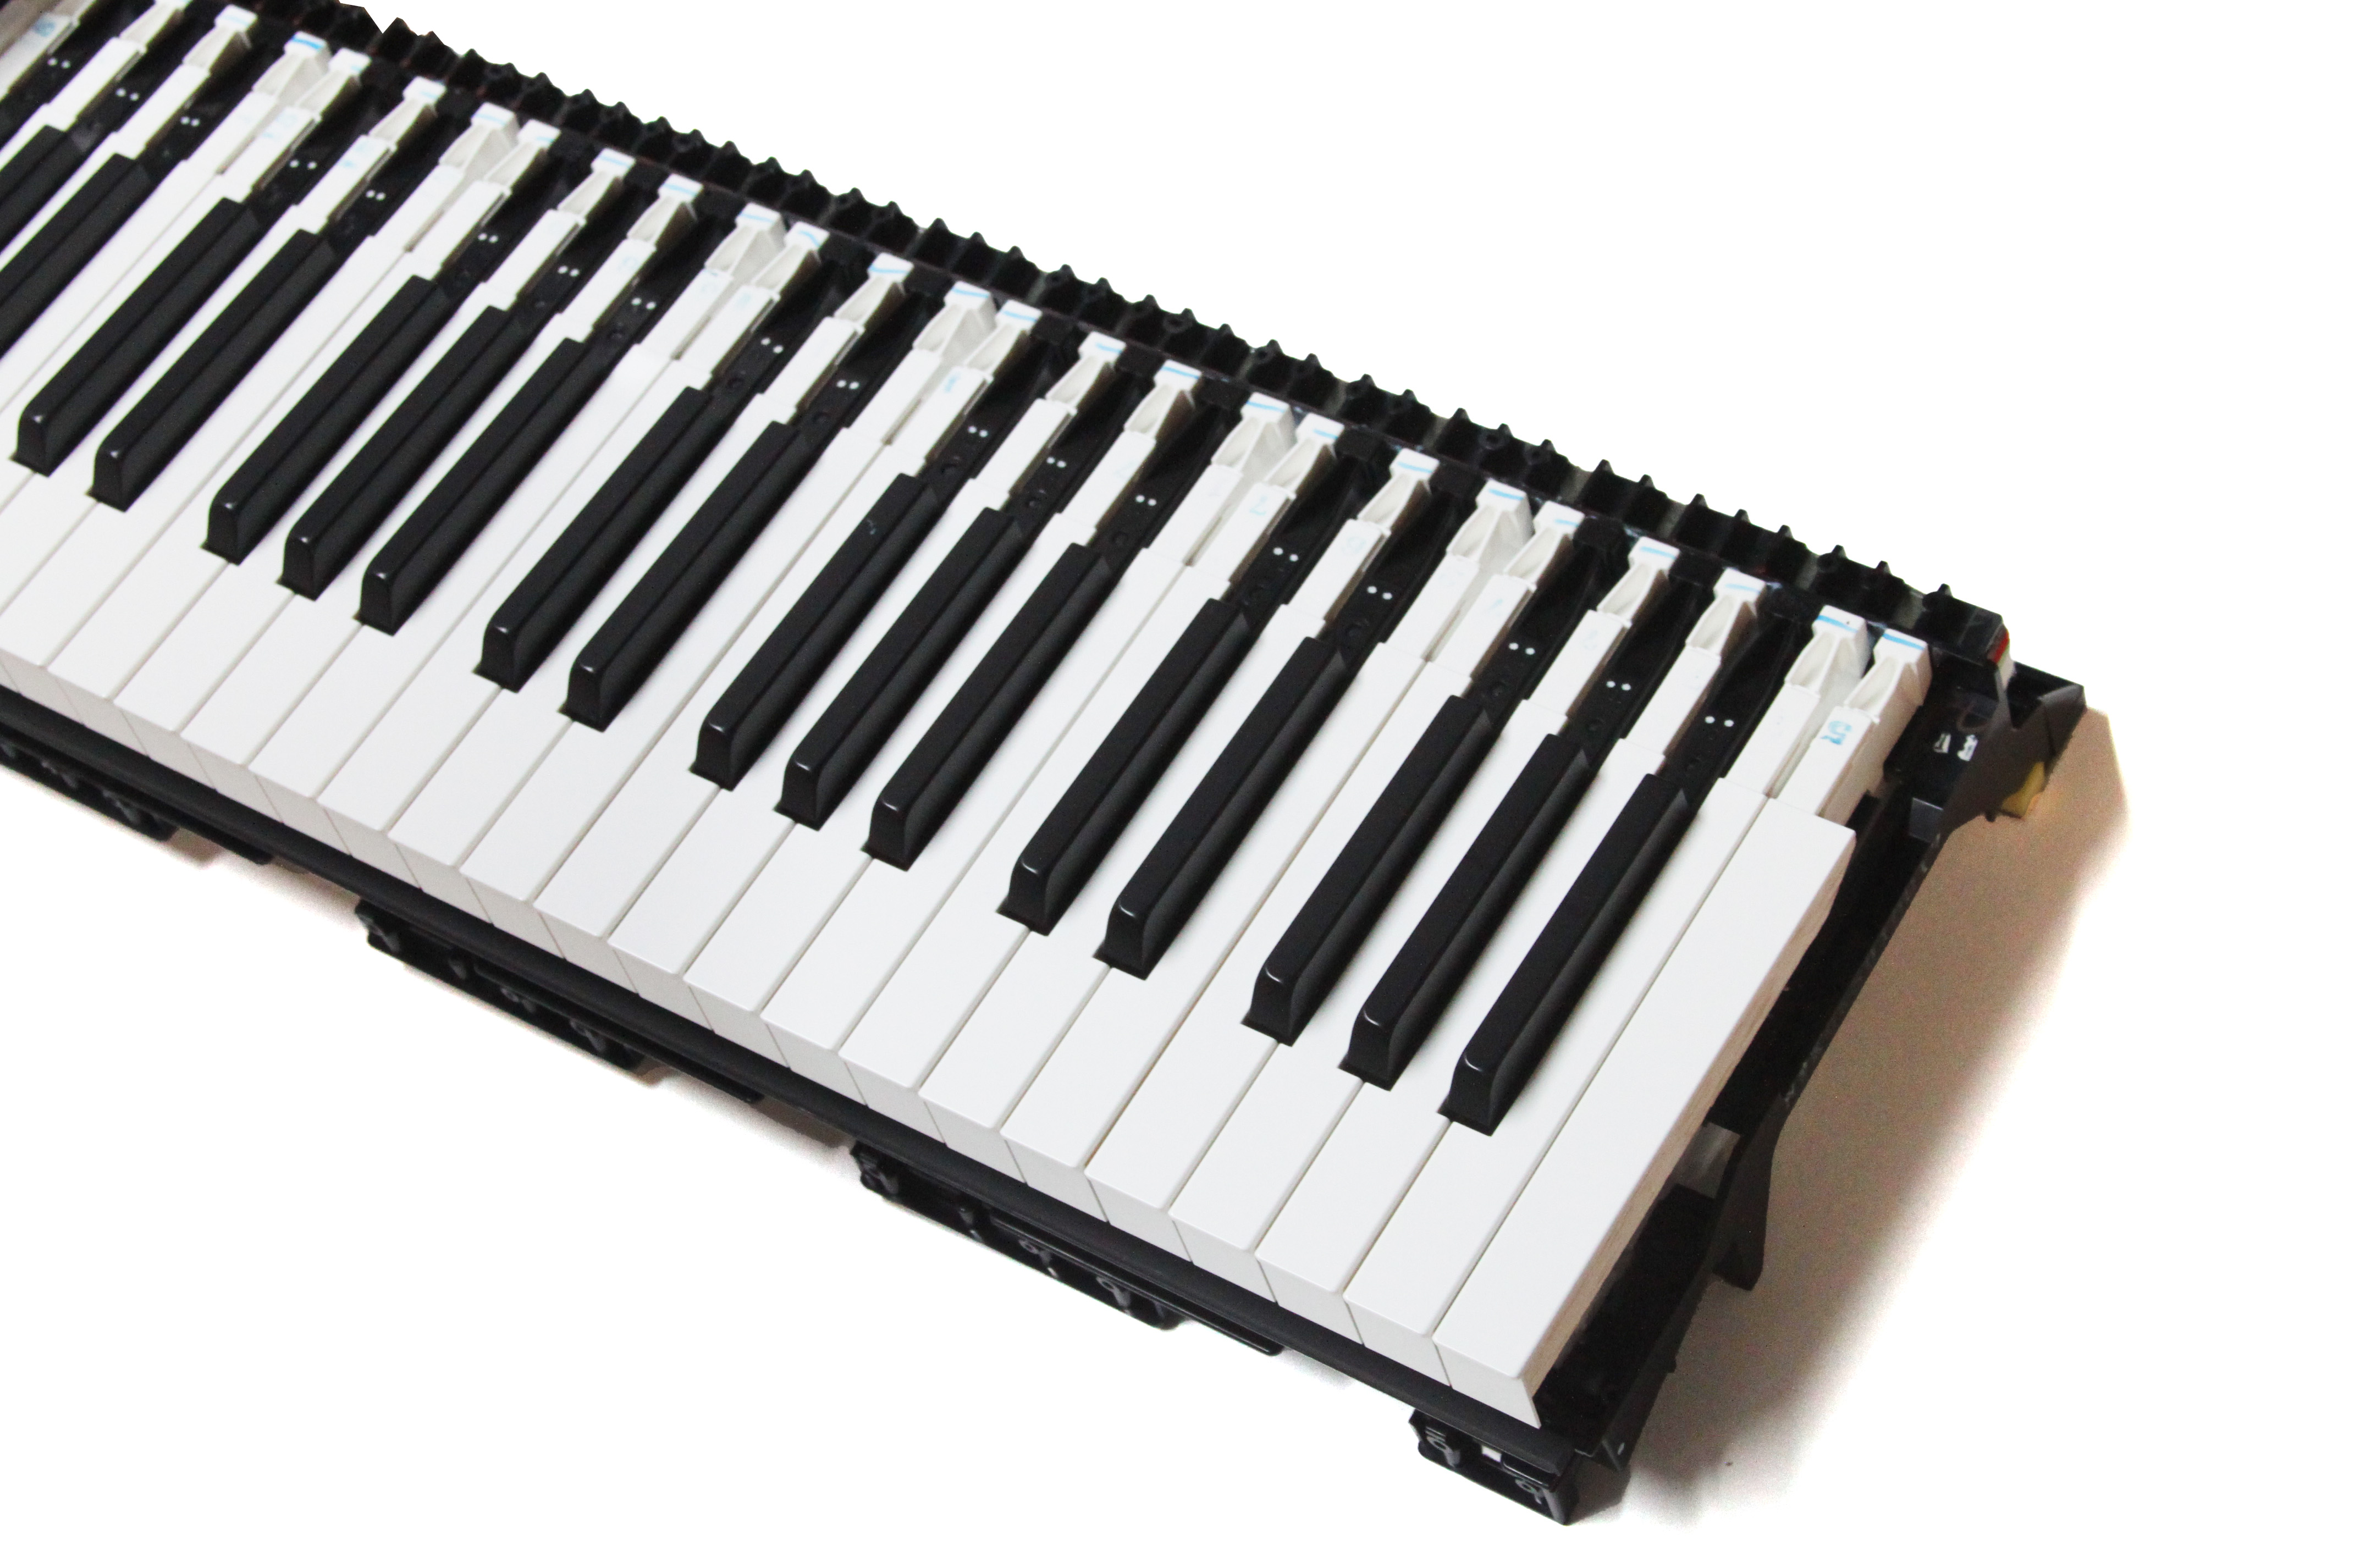 Keybed, 88-note Yamaha 